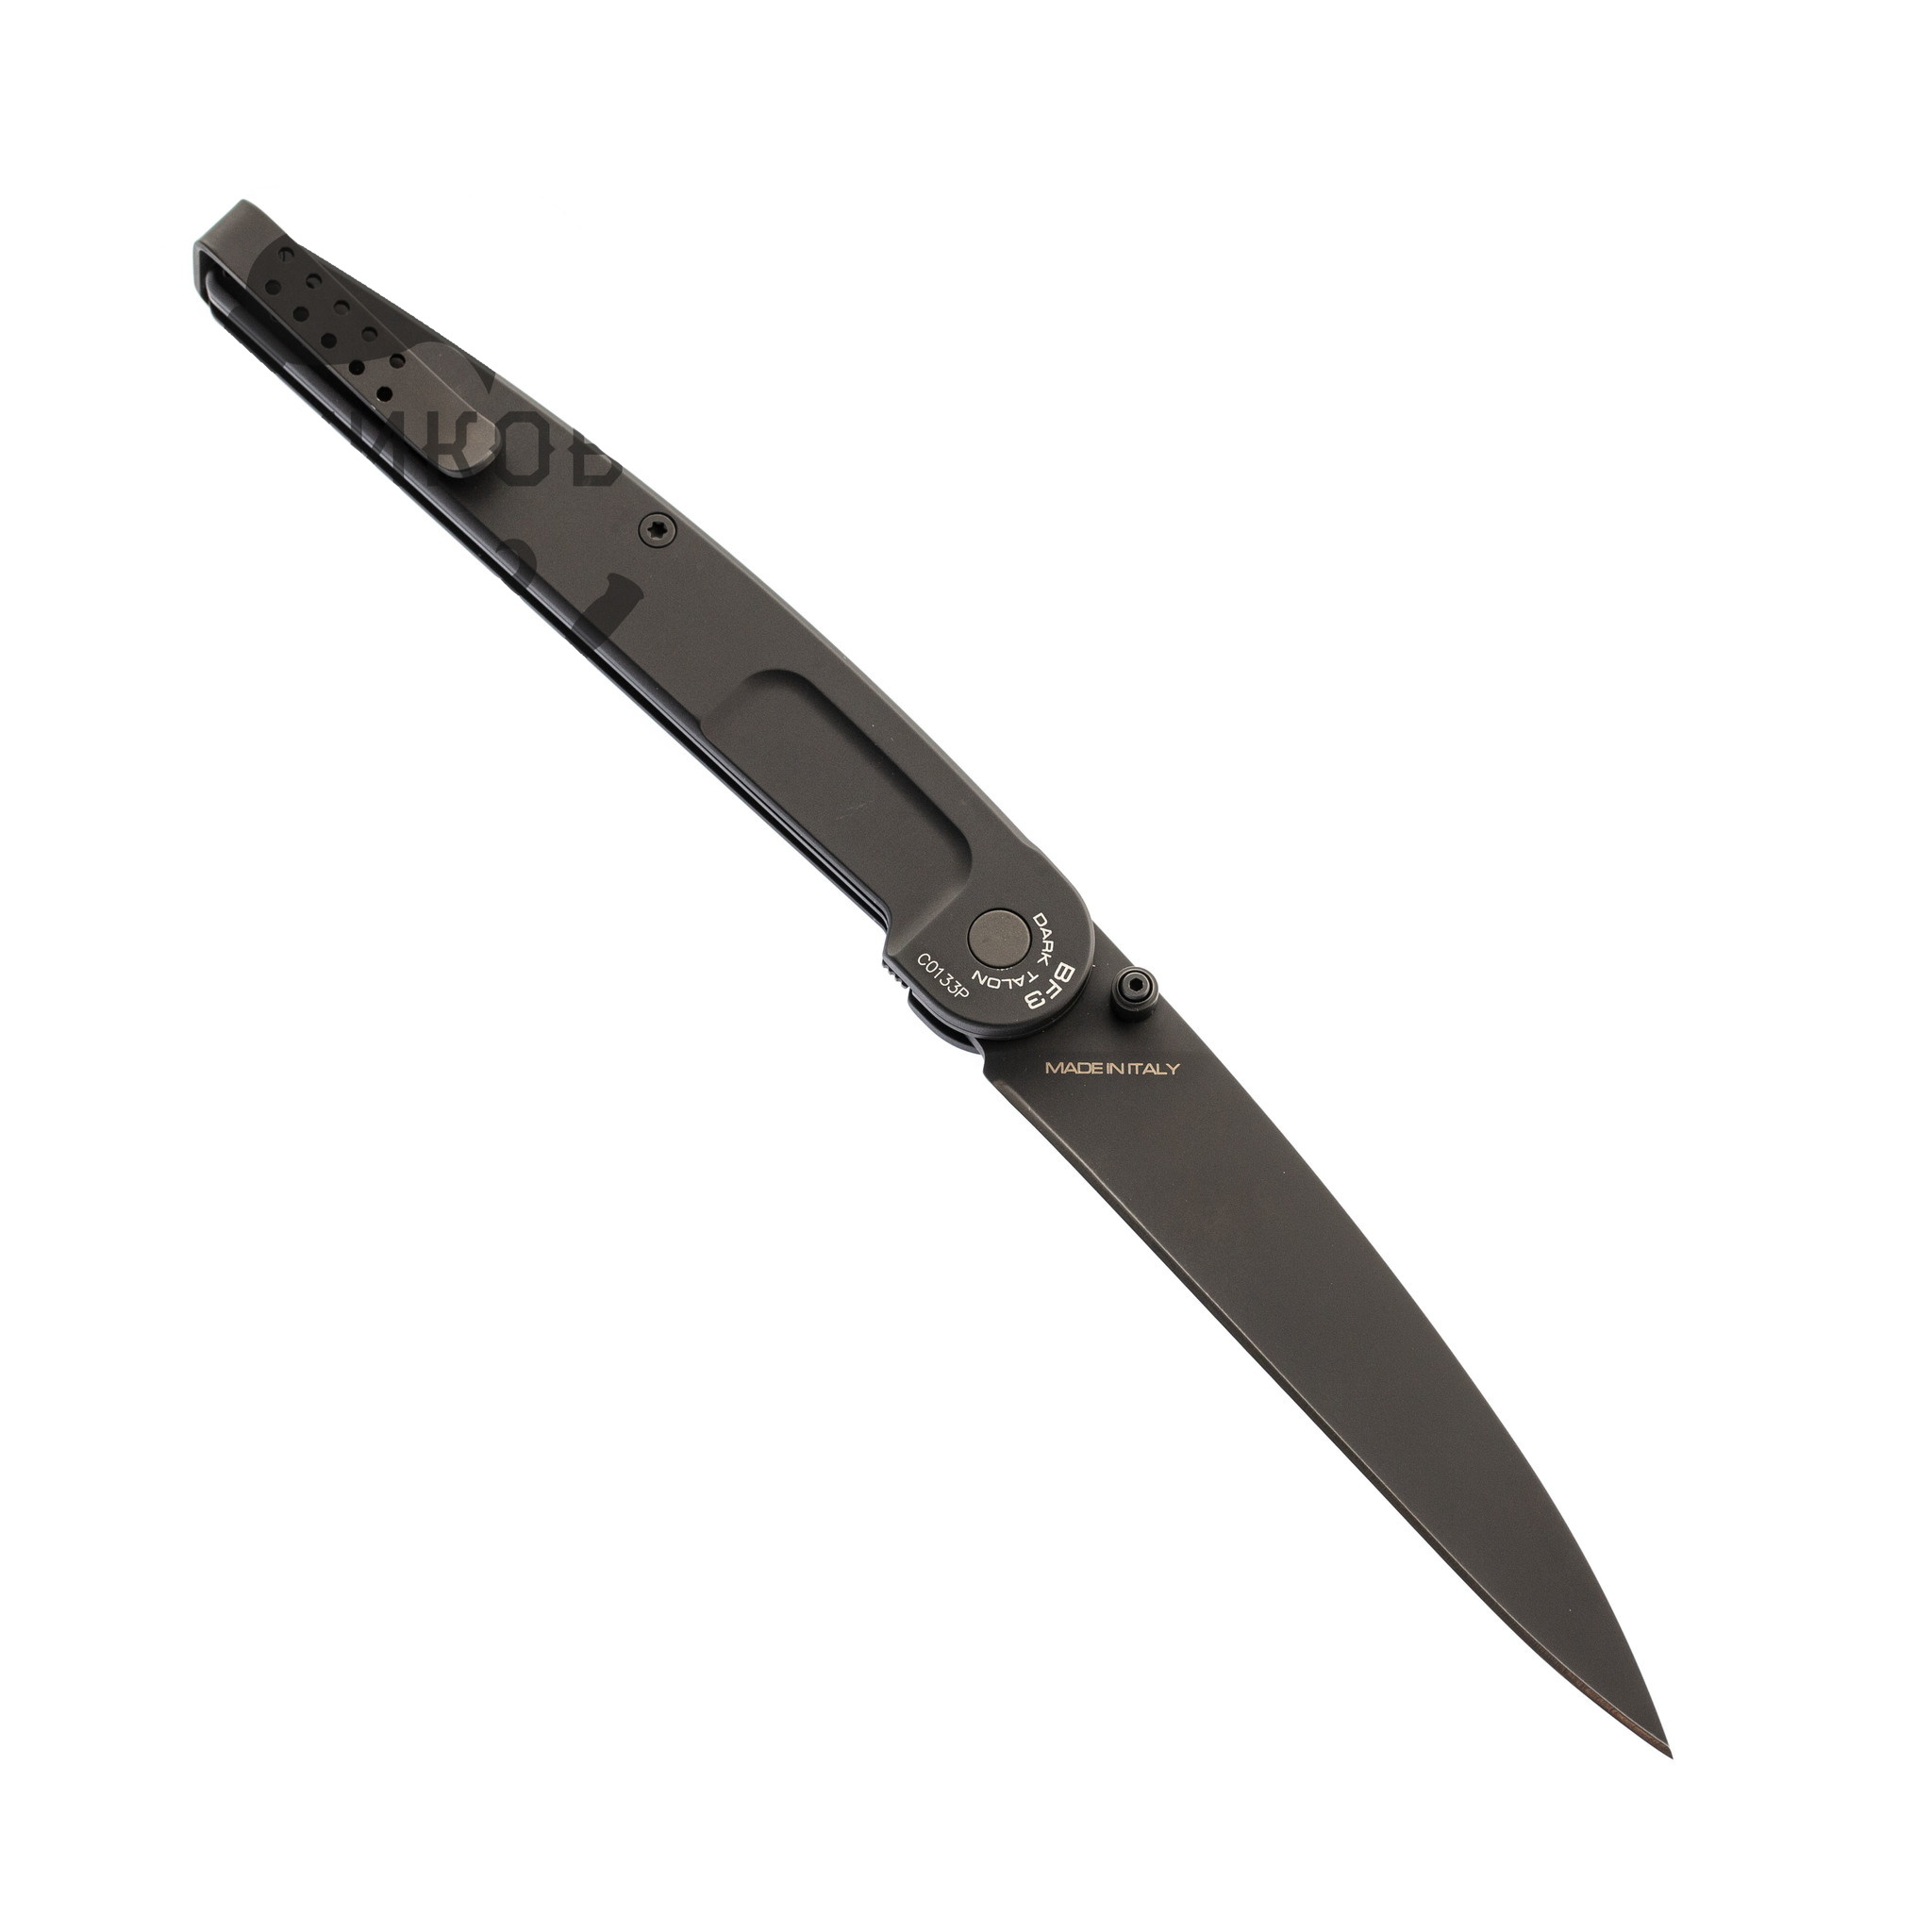 Складной нож Extrema Ratio Dark Talon, сталь Bhler N690, рукоять алюминий от Ножиков